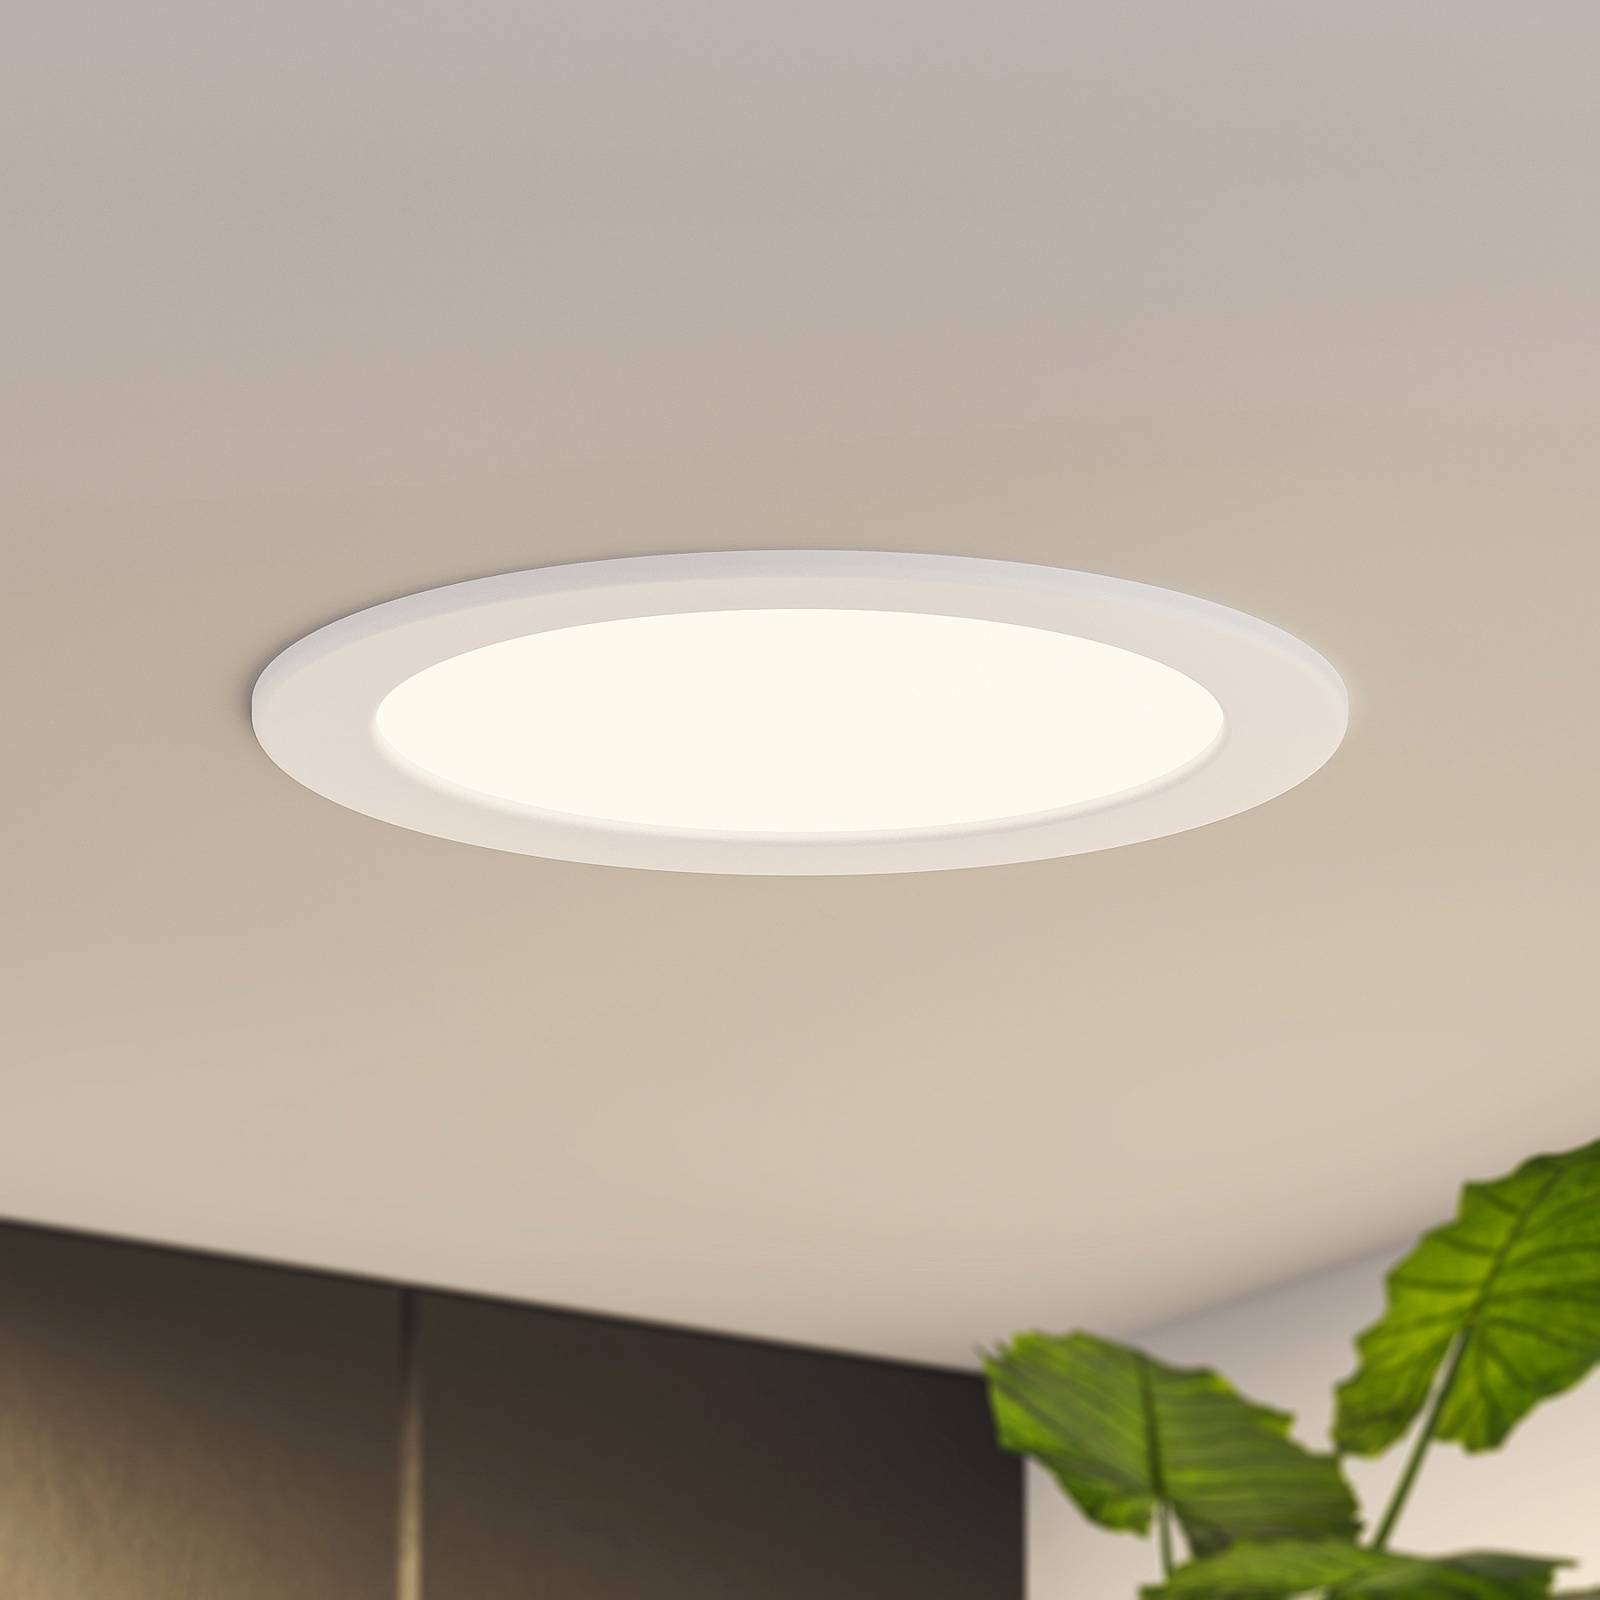 Prios Cadance LED indbygningslampe, hvid, 22 cm